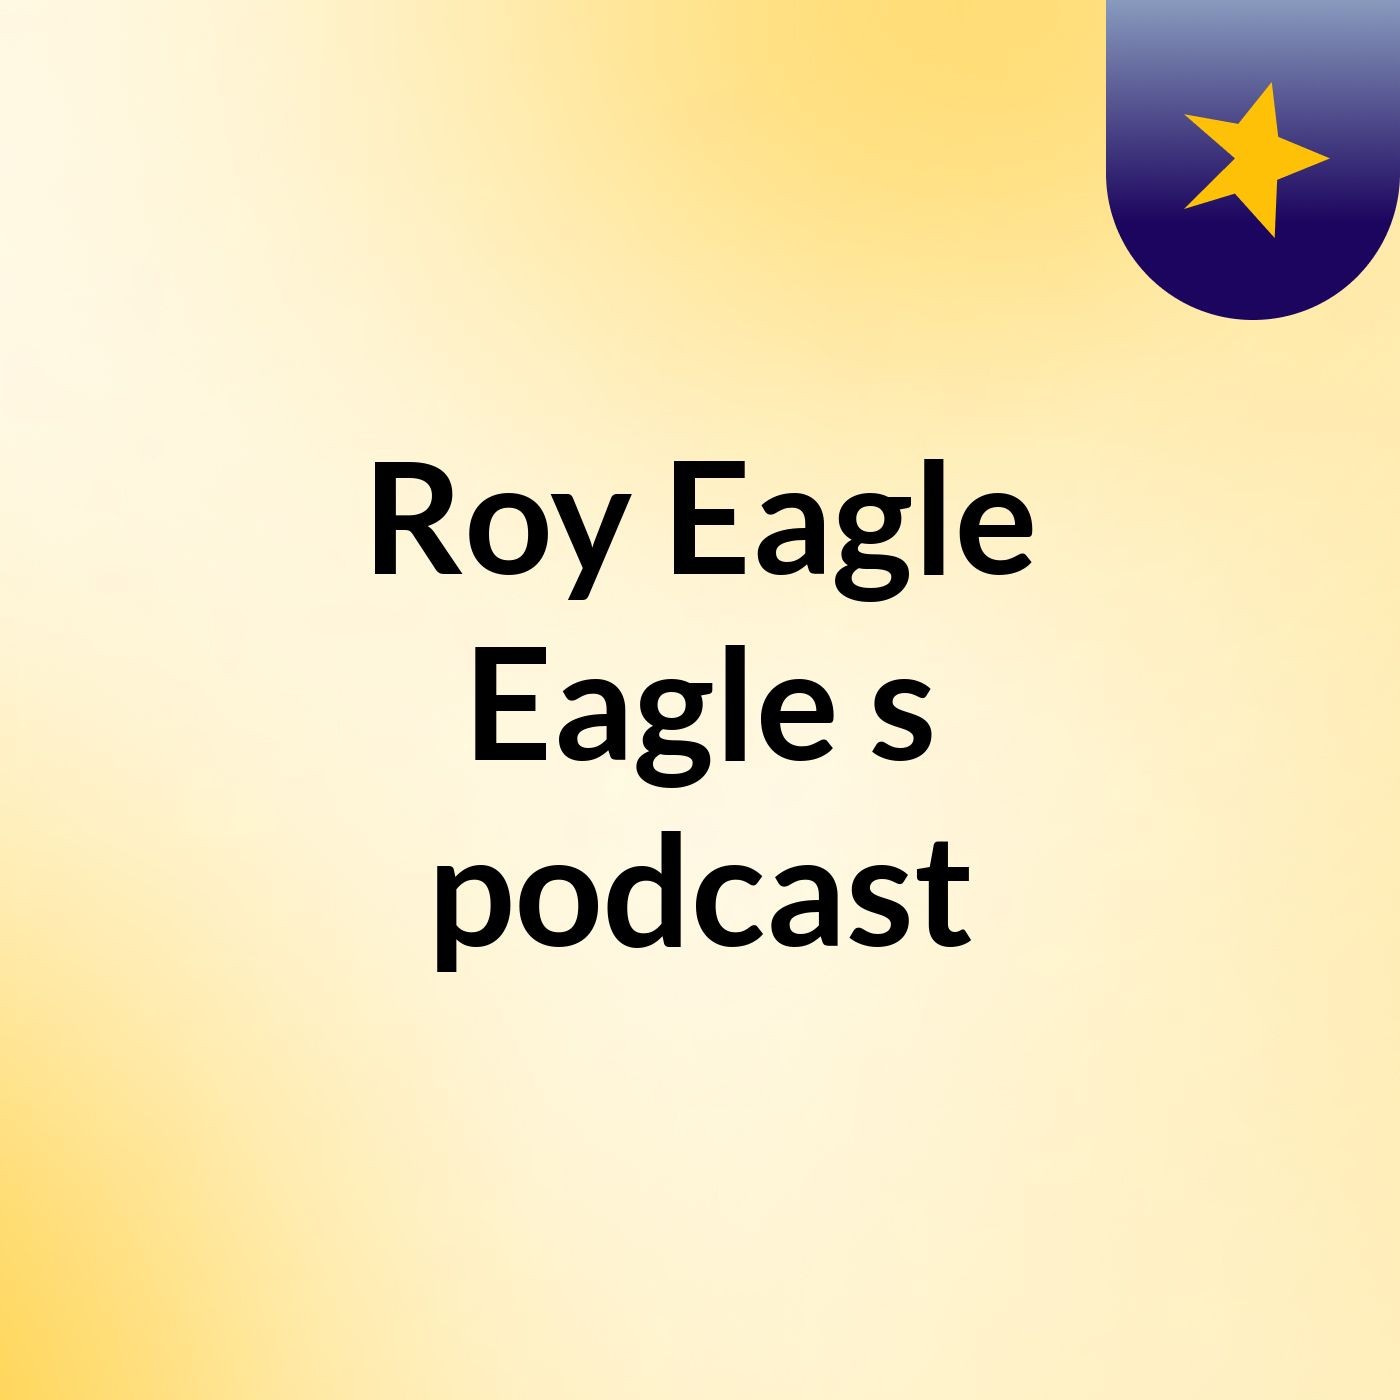 Roy Eagle Eagle's podcast